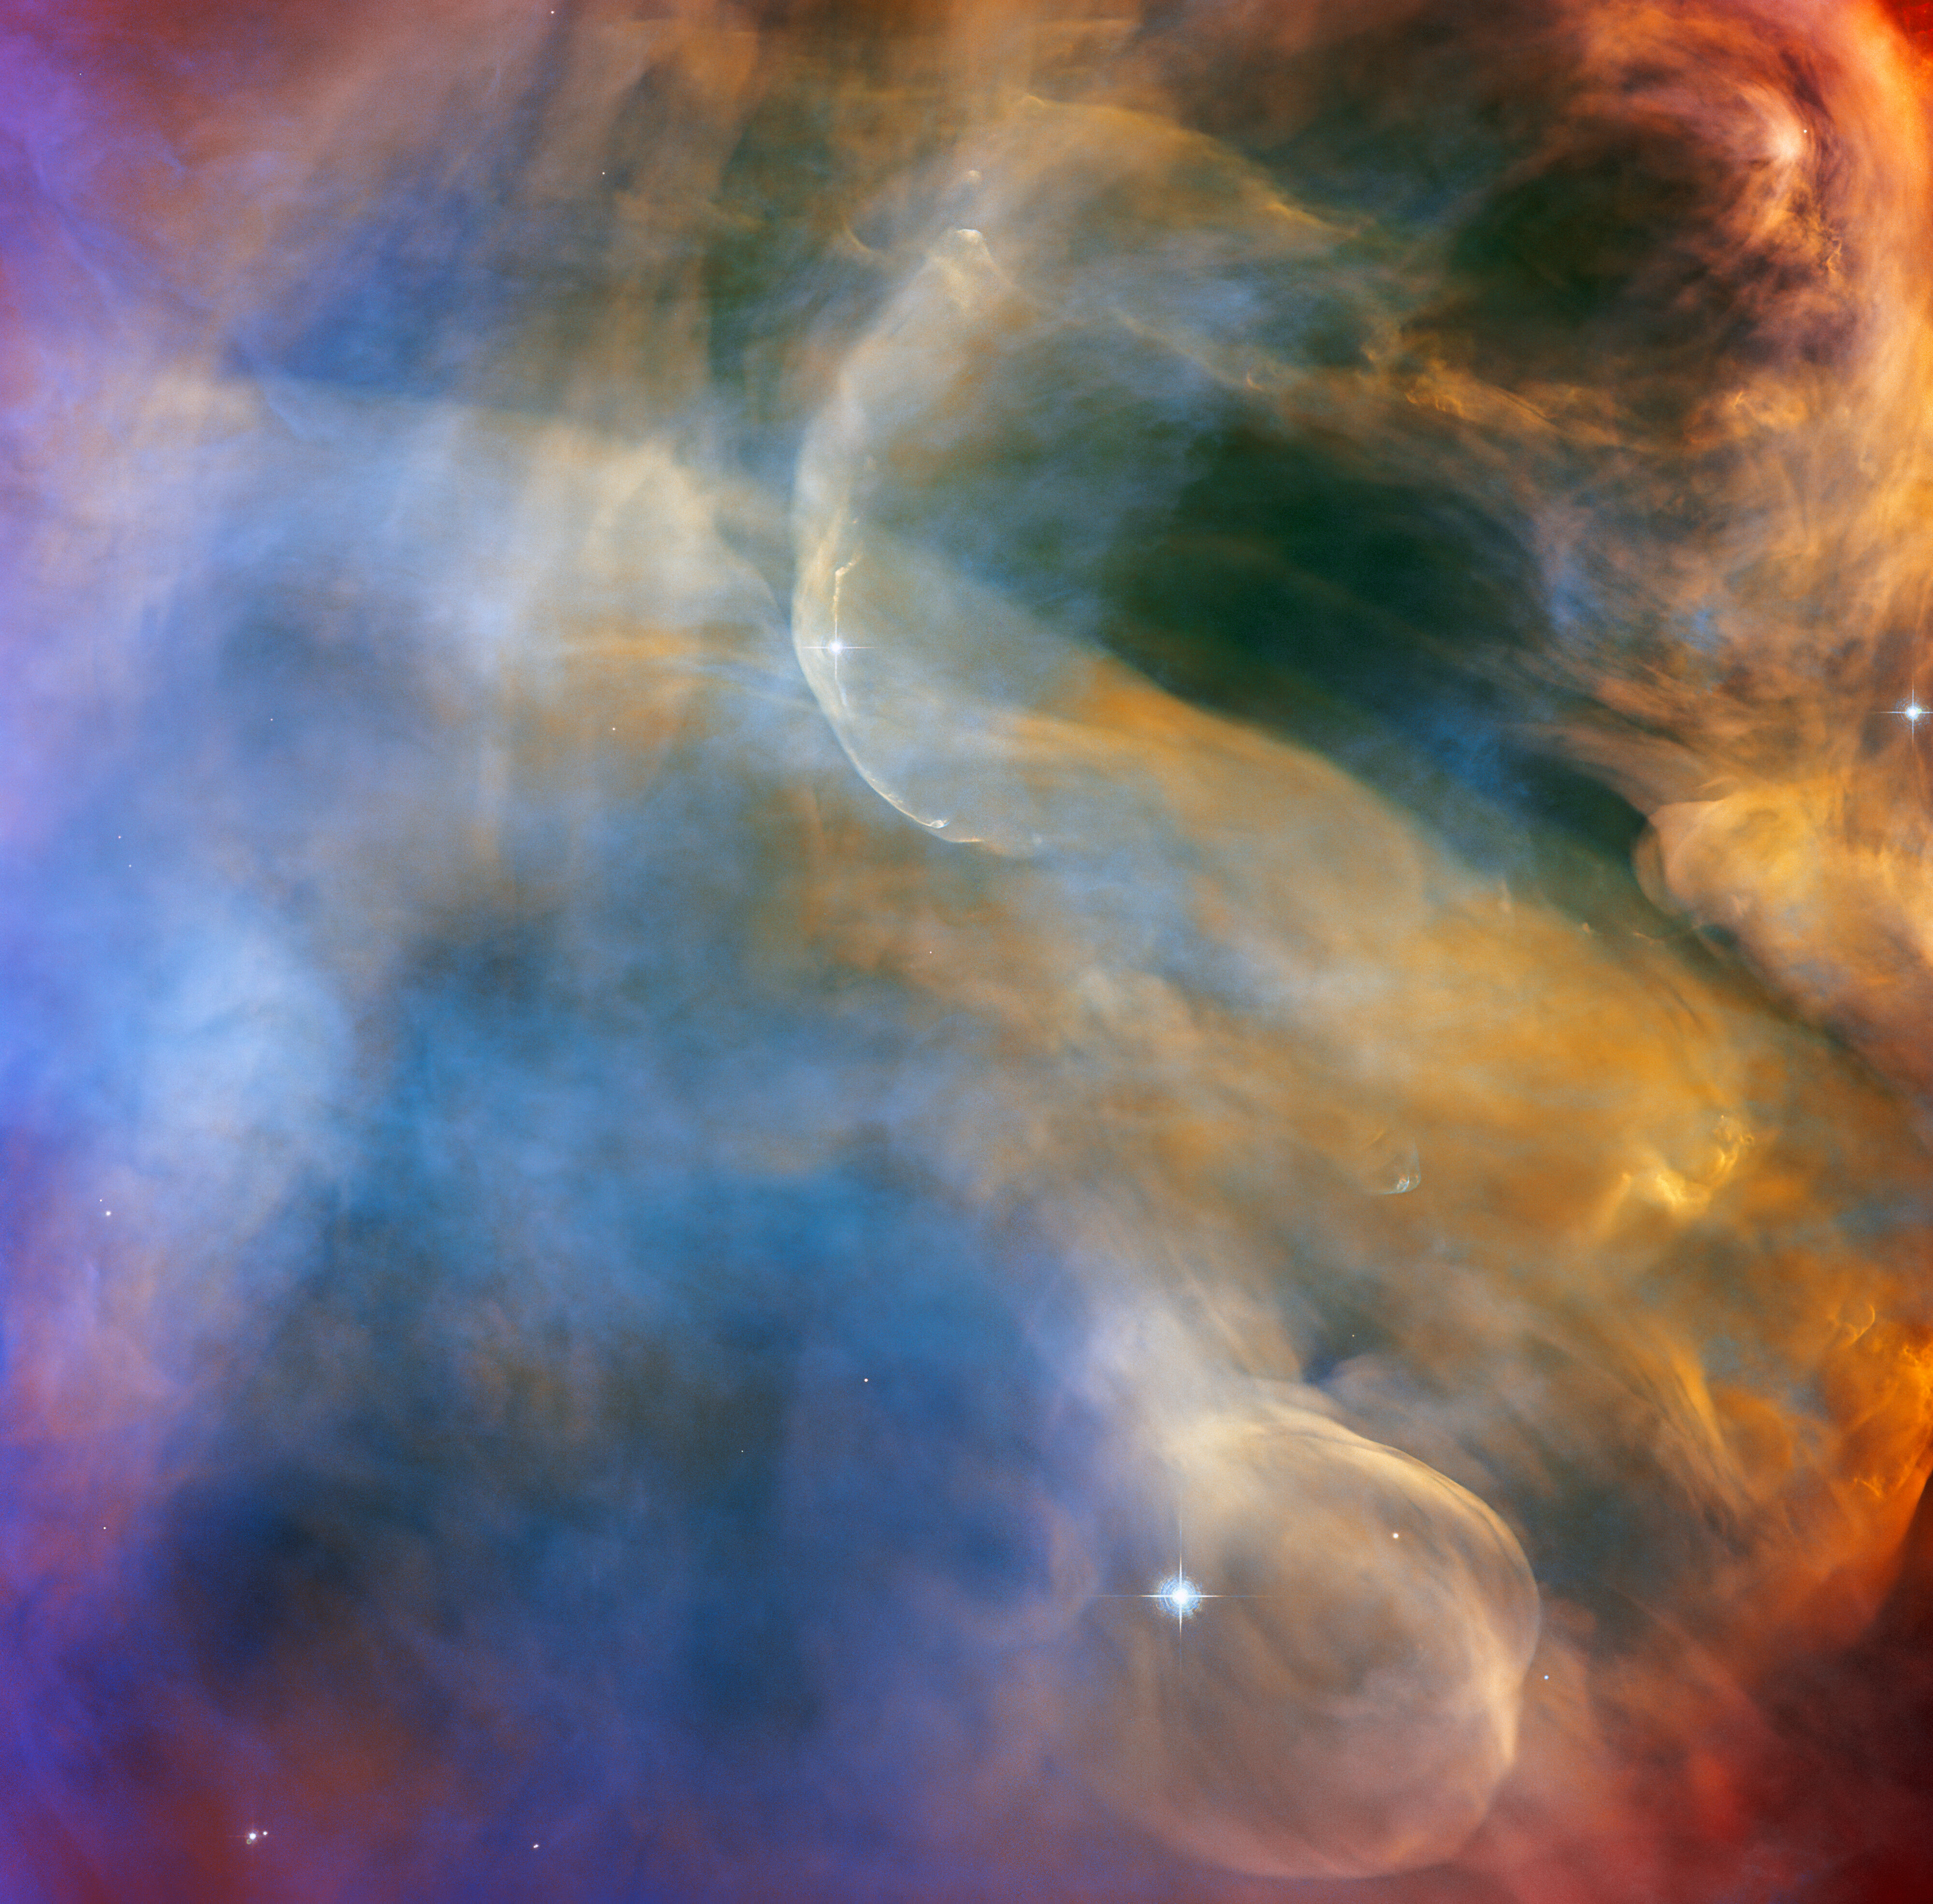 Obraz obiektu Herbiga-Haro 505 (HH 505) wykonany przez Kosmiczny Teleskop Hubble’a za pomocą instrumentu ACS. W przypadku HH 505 wypływy materii pochodzą od młodej gwiazdy IX Ori, która znajduje się na brzegu Mgławicy Oriona w odległości ~1000 l.św. od Ziemi. HH 505 jest widoczne w dolnej i górnej części zdjęcia jako jasne, przepiękne i wygięte w łuk obłoki pyłowo-gazowe. Źródło: ESA/Hubble and NASA, J Bally, Acknowledgement: MH Özsaraç